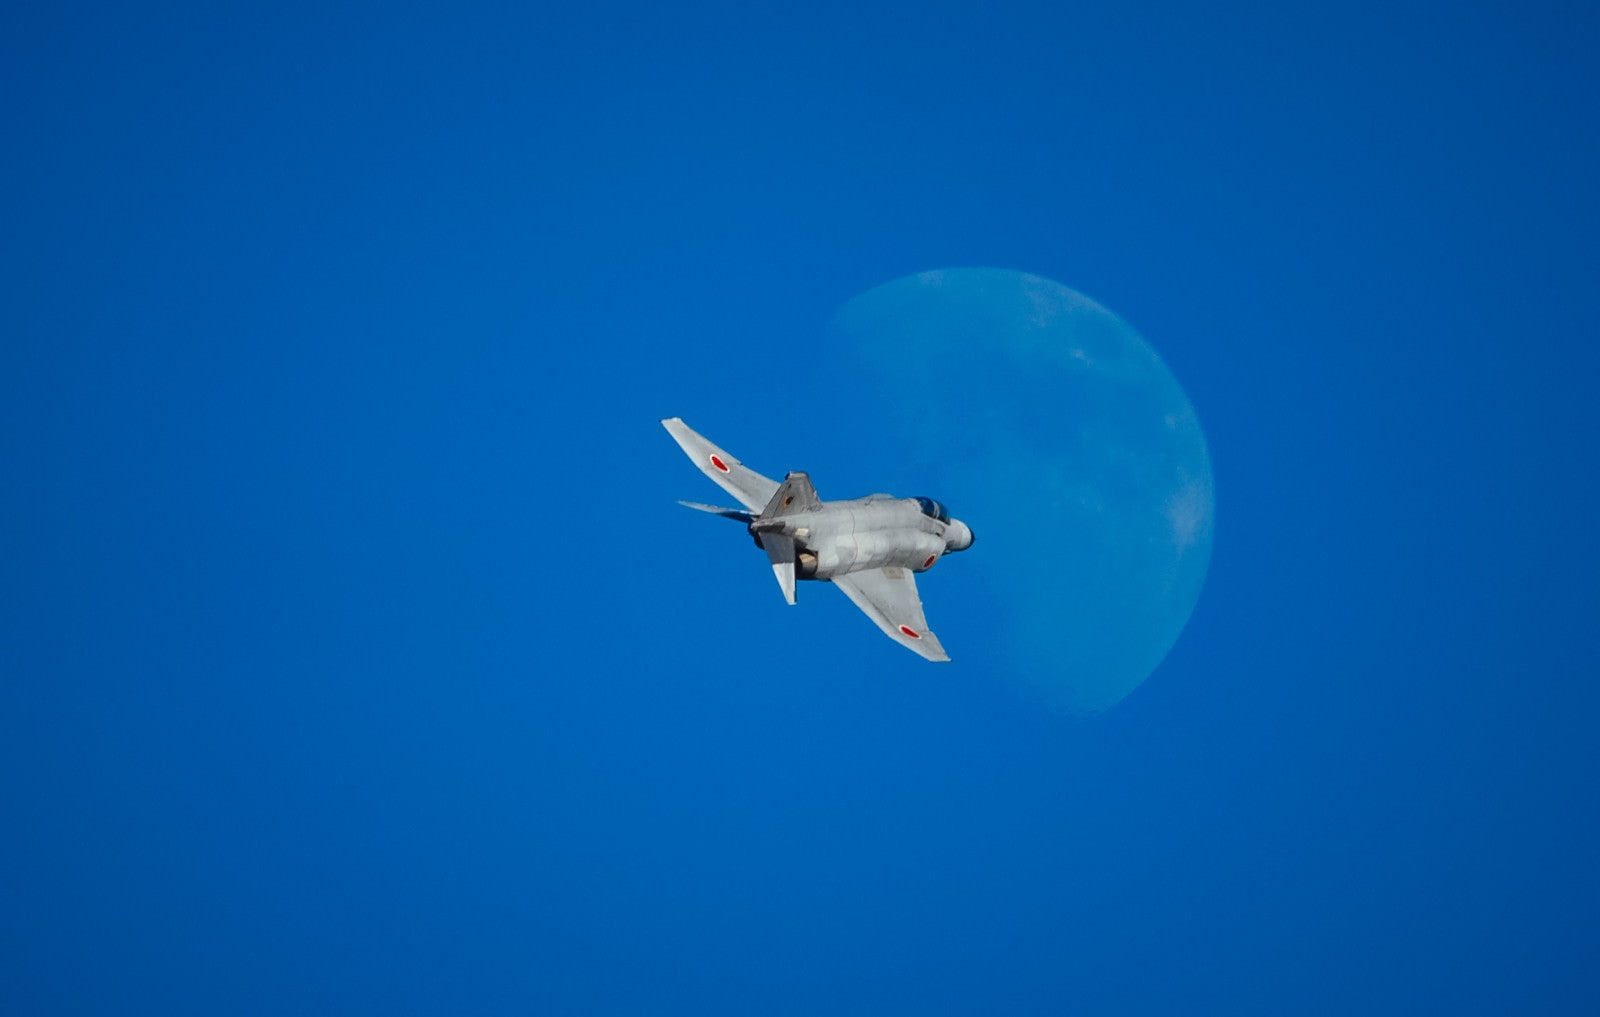 「月に向かって飛行するF-4戦闘機」の写真